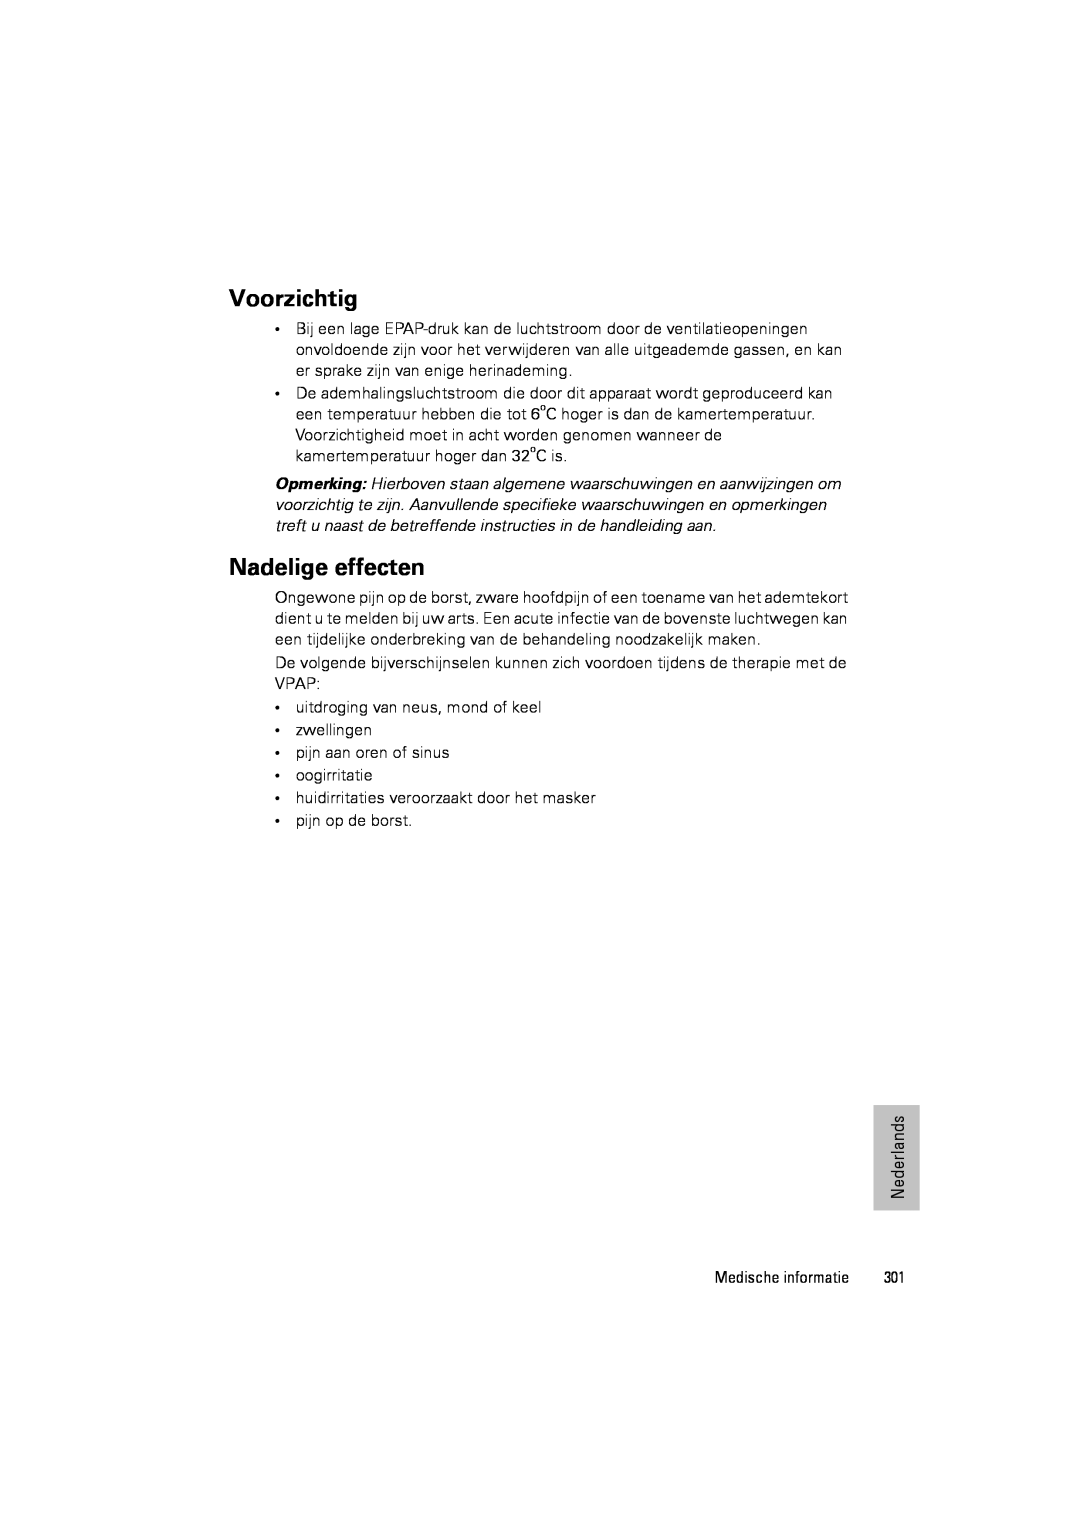 ResMed III & III ST user manual Voorzichtig, Nadelige effecten 